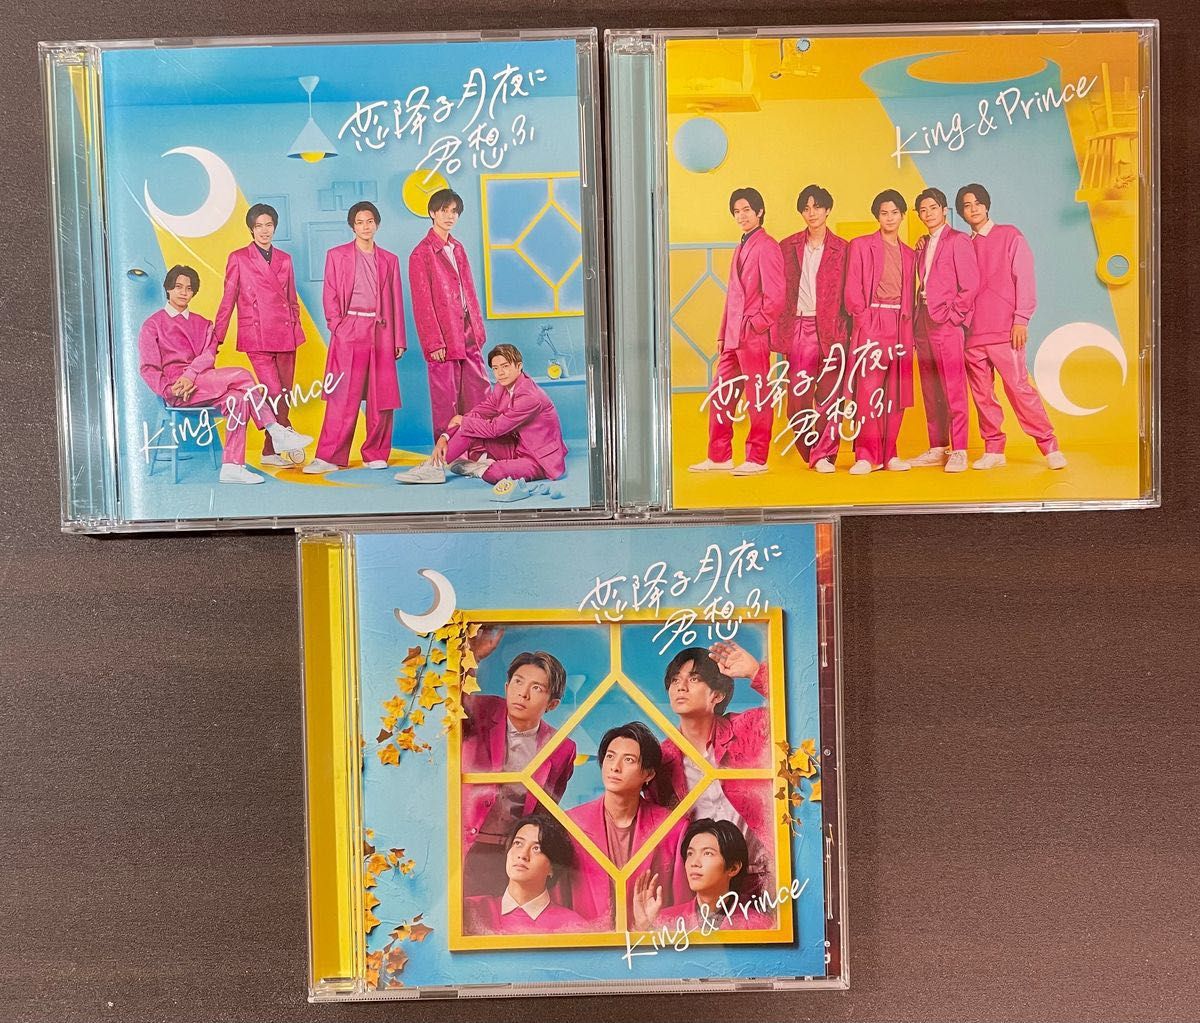 [全形態]MazyNight 、恋降る月夜に君思ふ　King&Prince CDセット